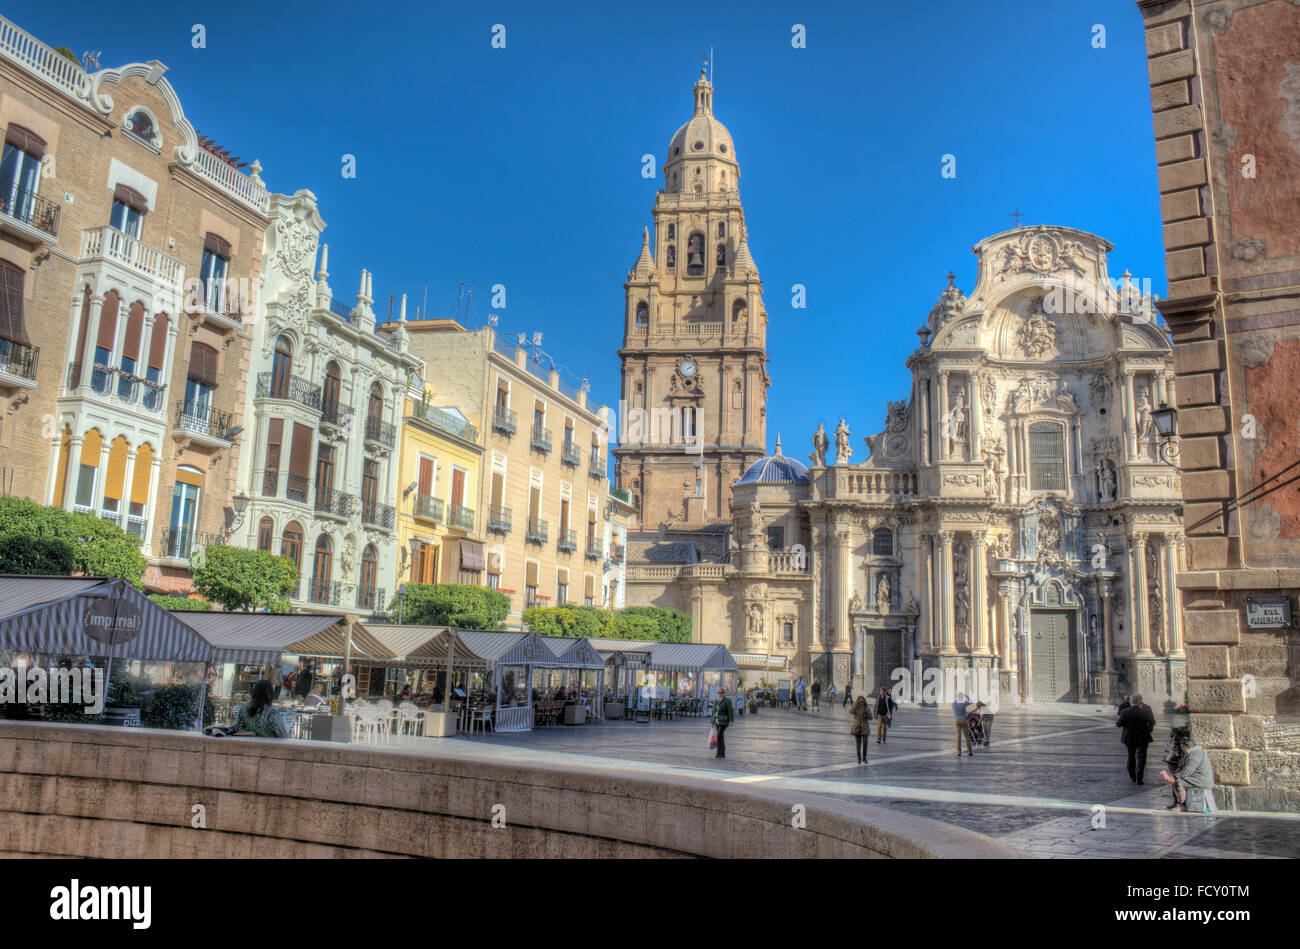 La cathédrale de Murcie et de la Plaza del Cardenal Belluga à Murcie, Espagne Banque D'Images